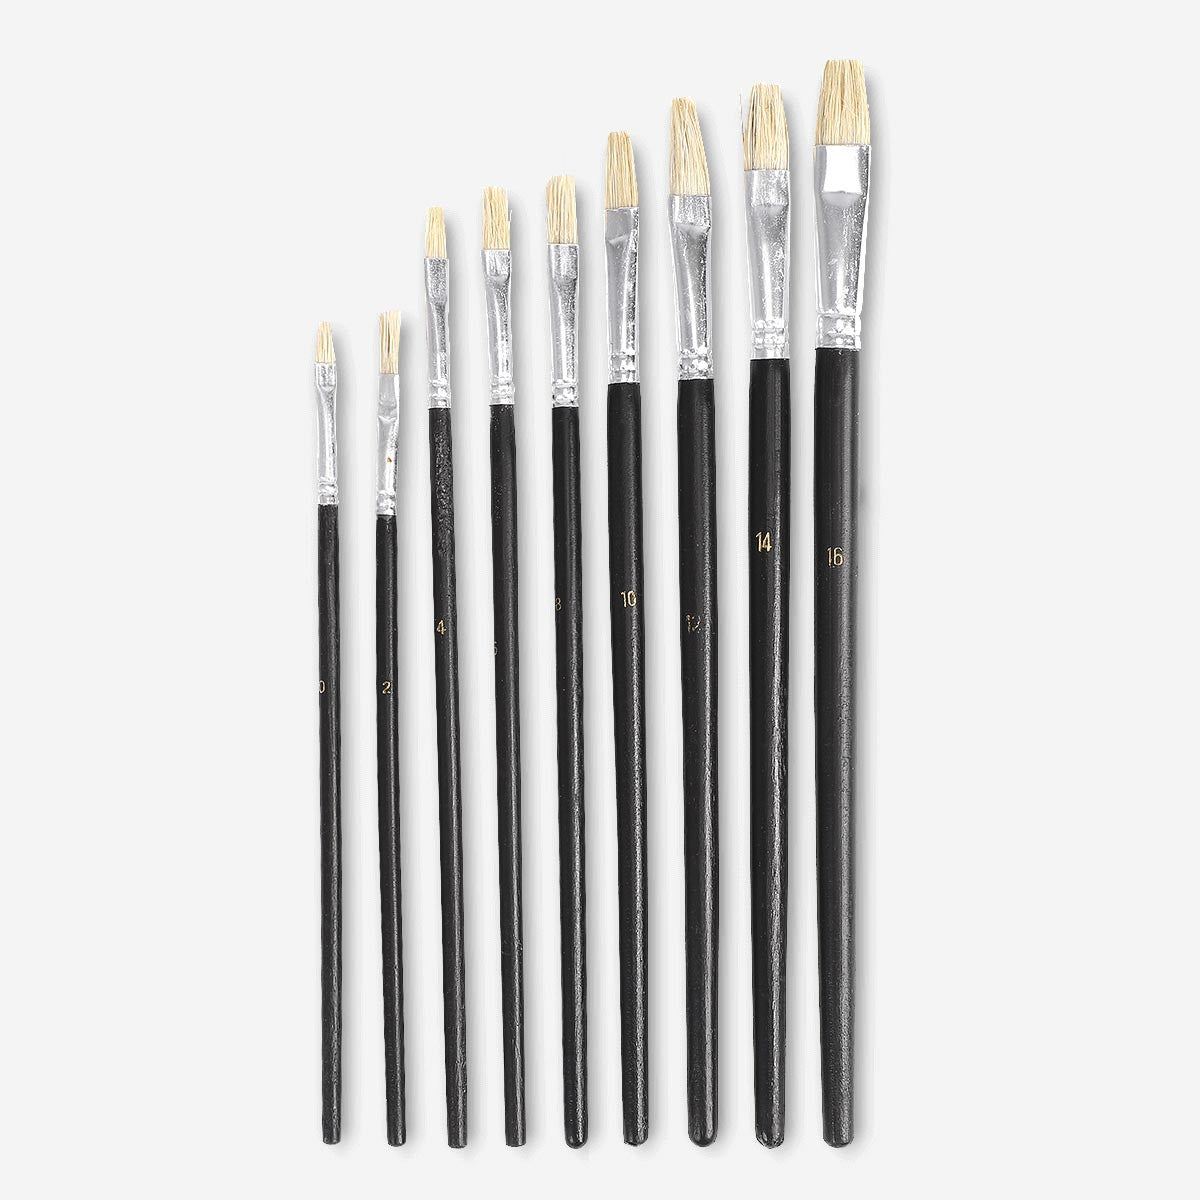 Image of Black hobby paint brushes set - 9 sizes